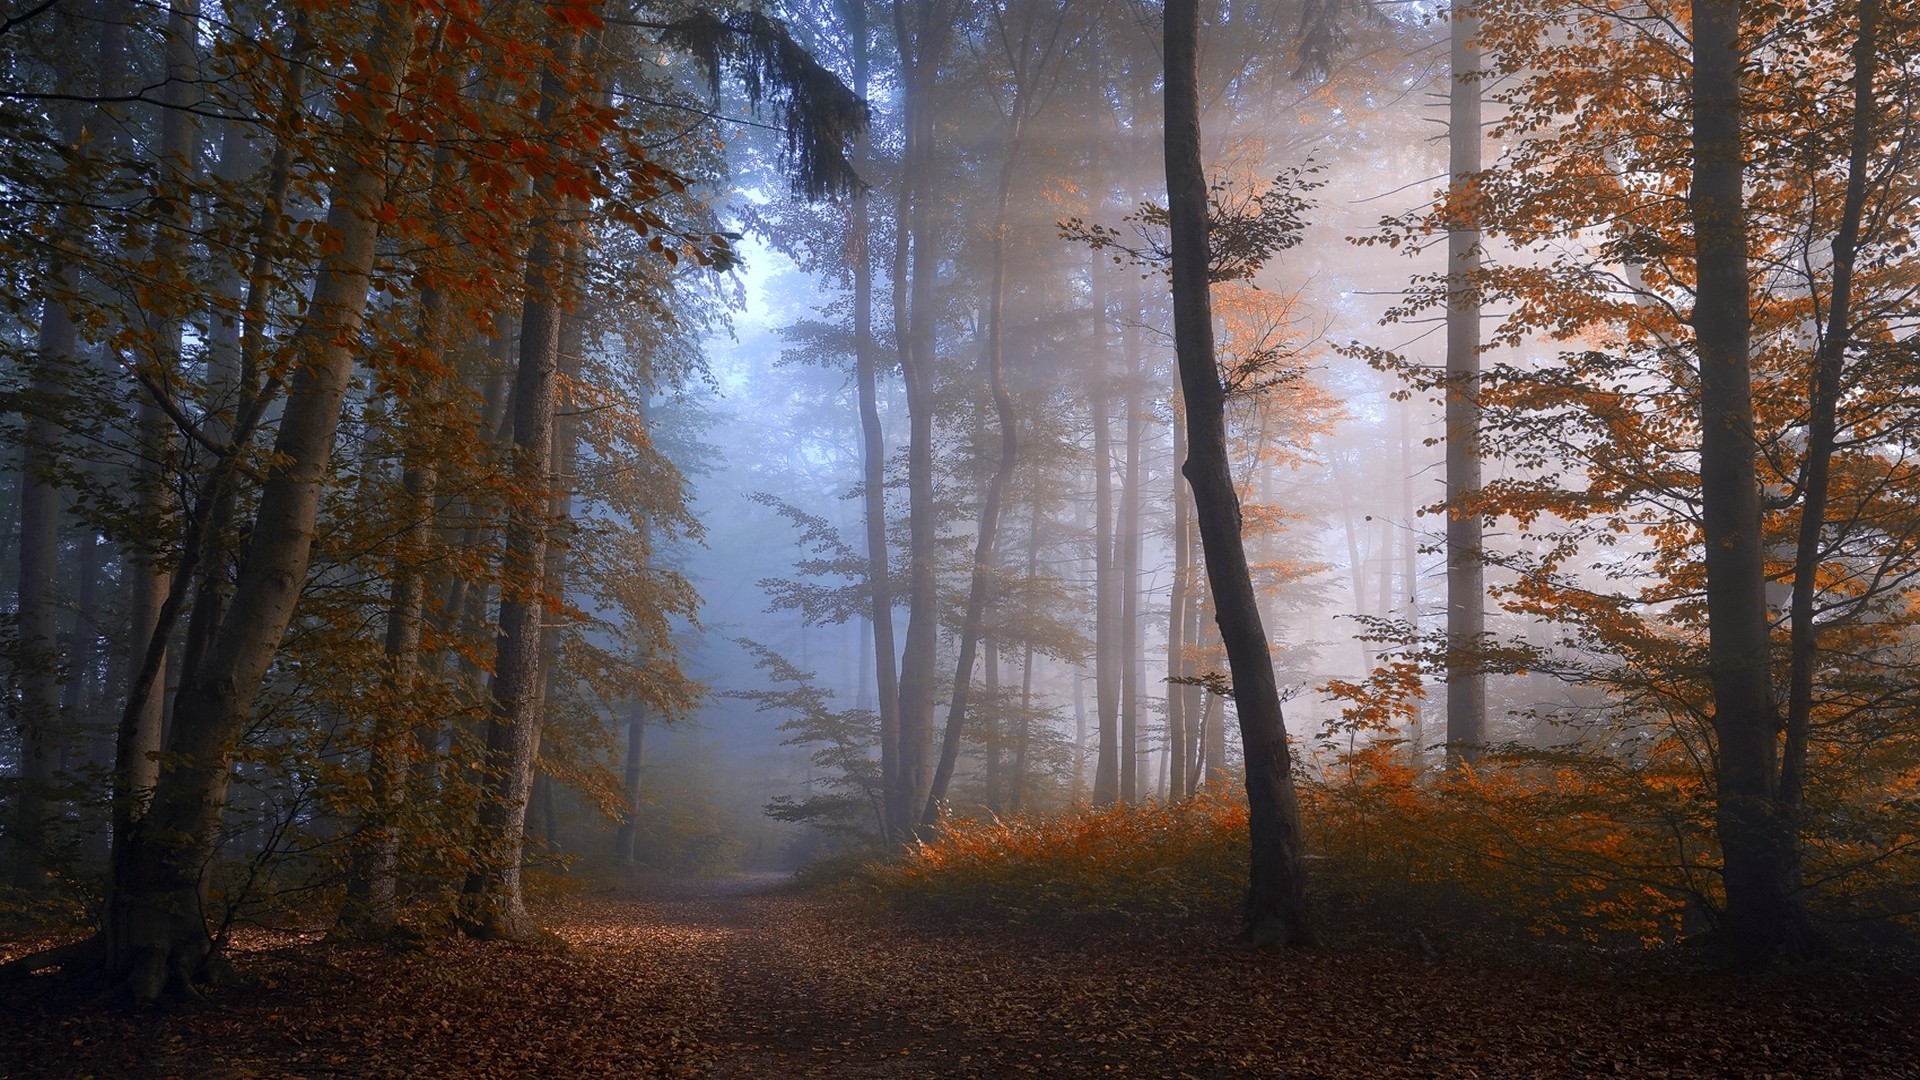 Скачать обои бесплатно Осень, Лес, Туман, Дорожка, Земля/природа, Грязная Дорога картинка на рабочий стол ПК